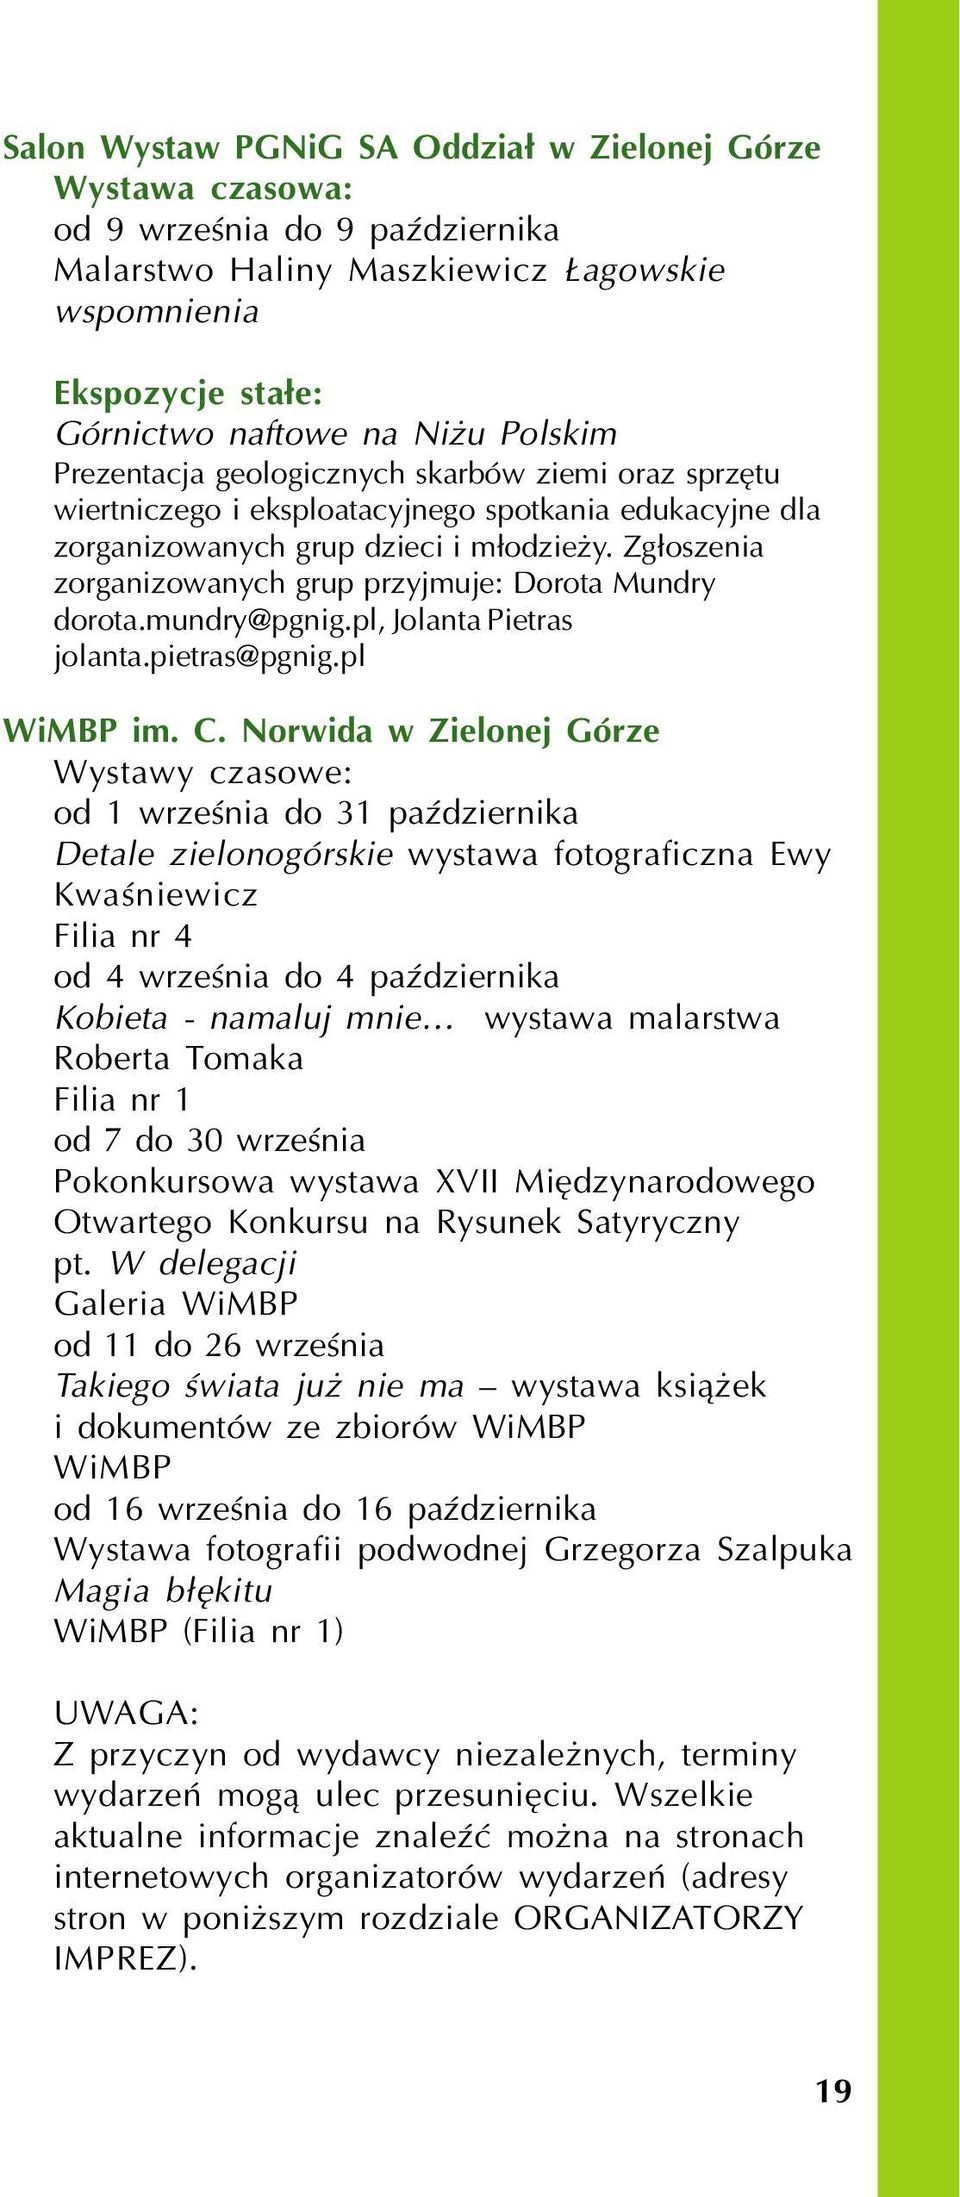 Zg³oszenia zorganizowanych grup przyjmuje: Dorota Mundry dorota.mundry@pgnig.pl, Jolanta Pietras jolanta.pietras@pgnig.pl WiMBP im. C.